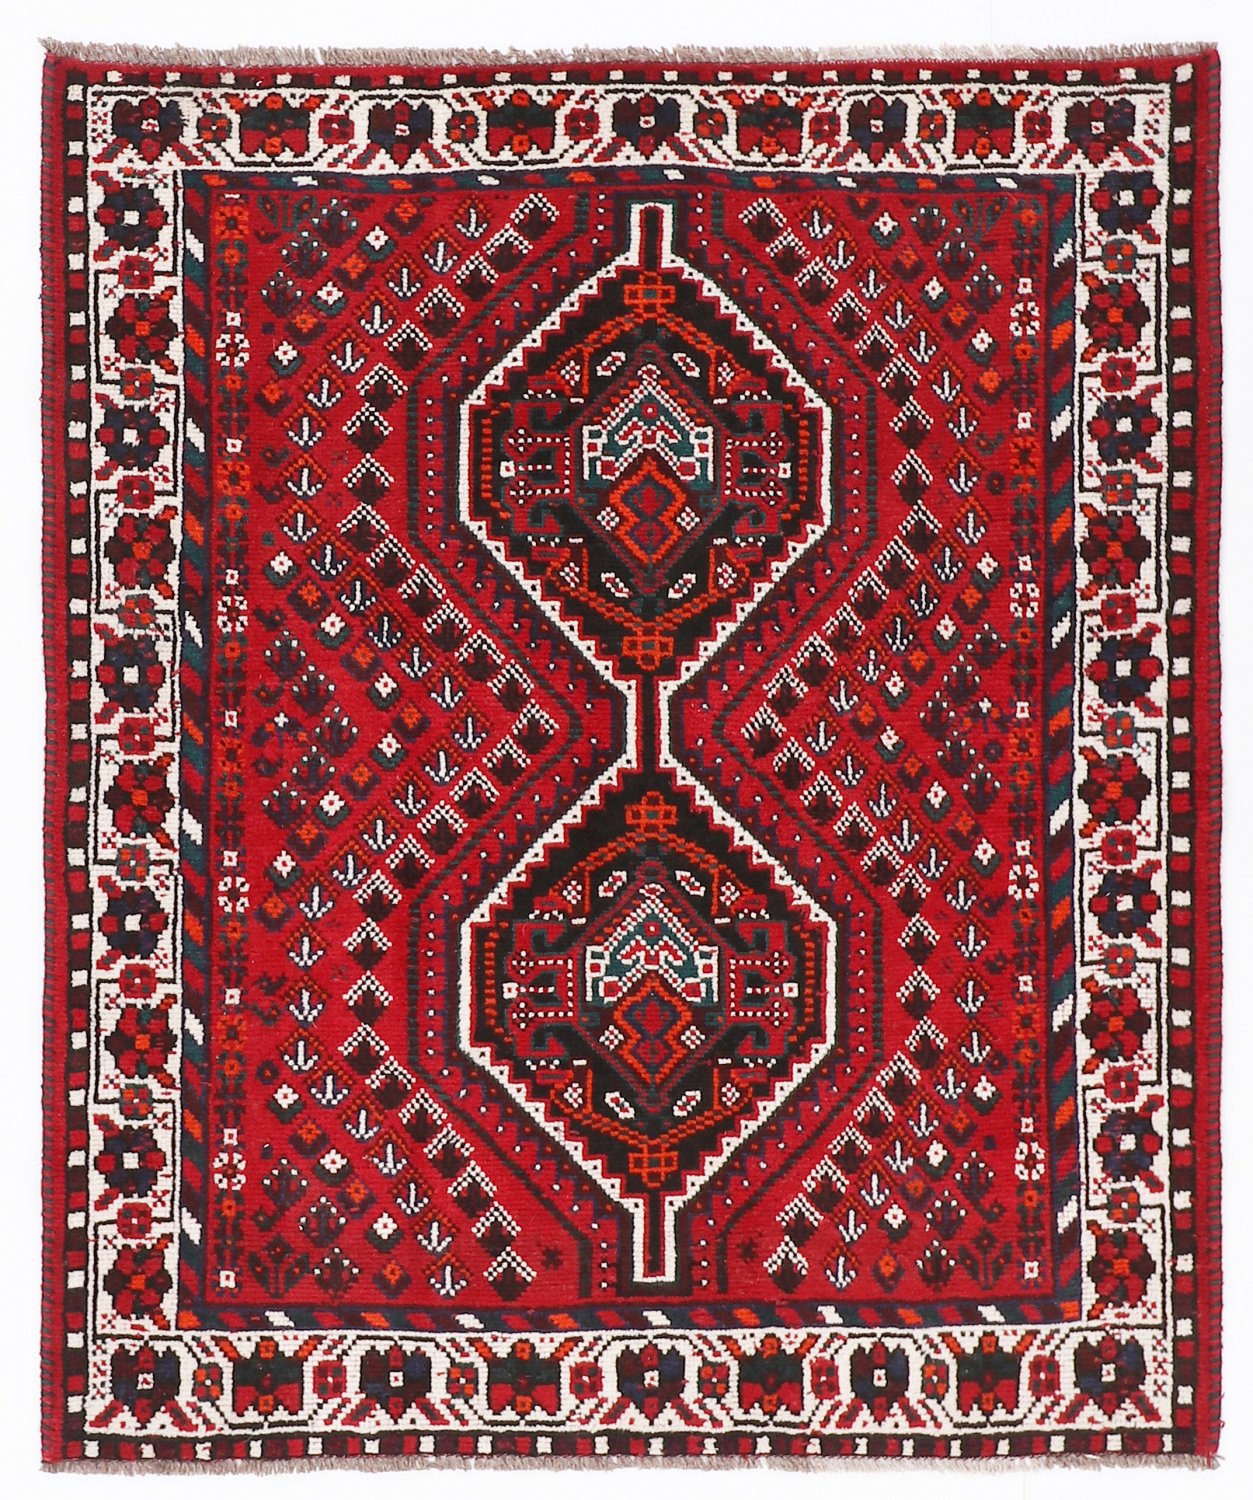 Persian rug Hamedan 151 x 118 cm